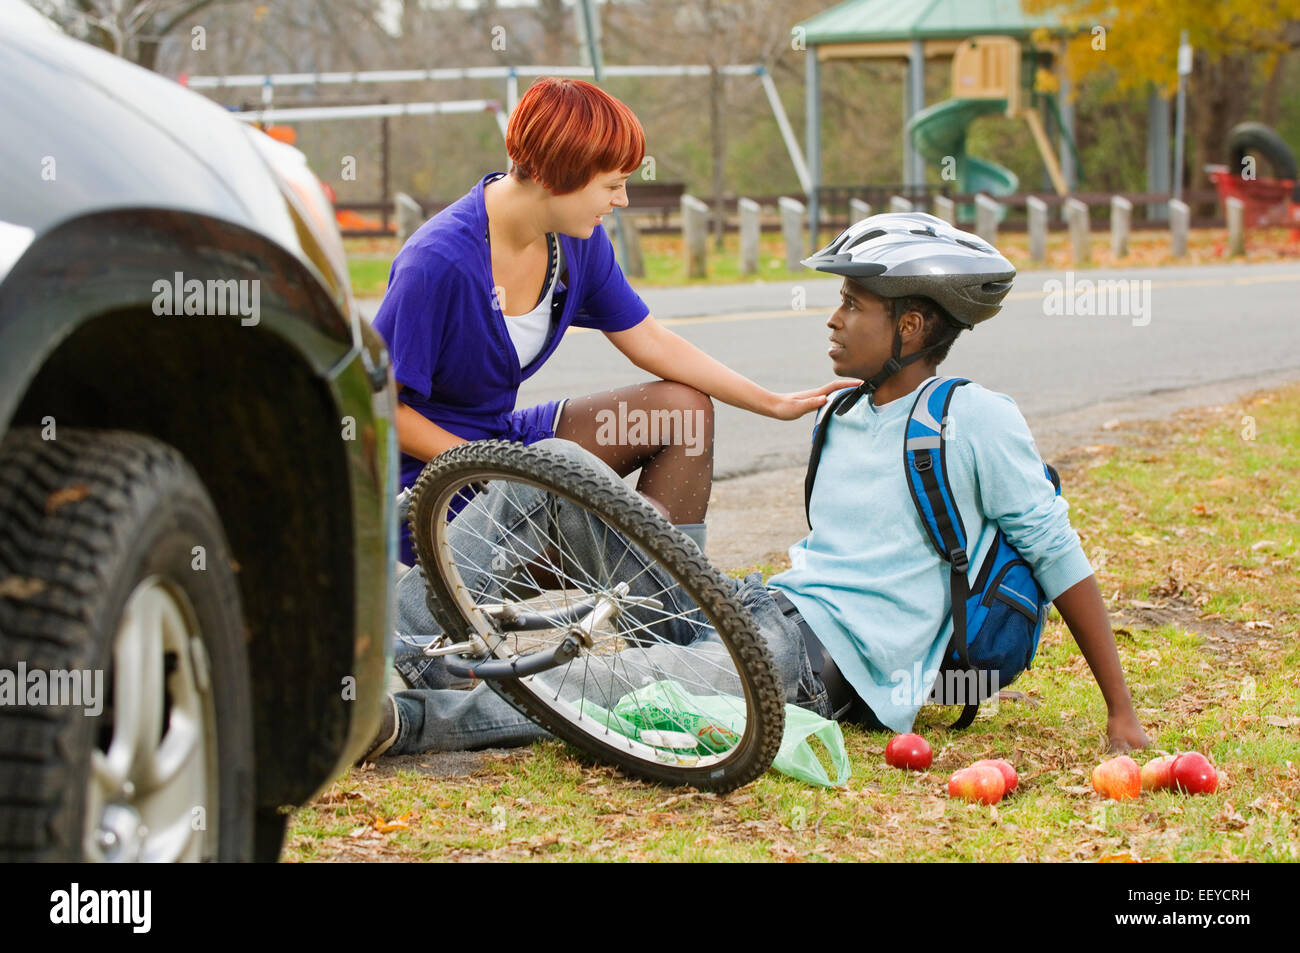 Radfahrer zu helfen, nachdem er von einem Auto angefahren wurde Frau Stockfoto